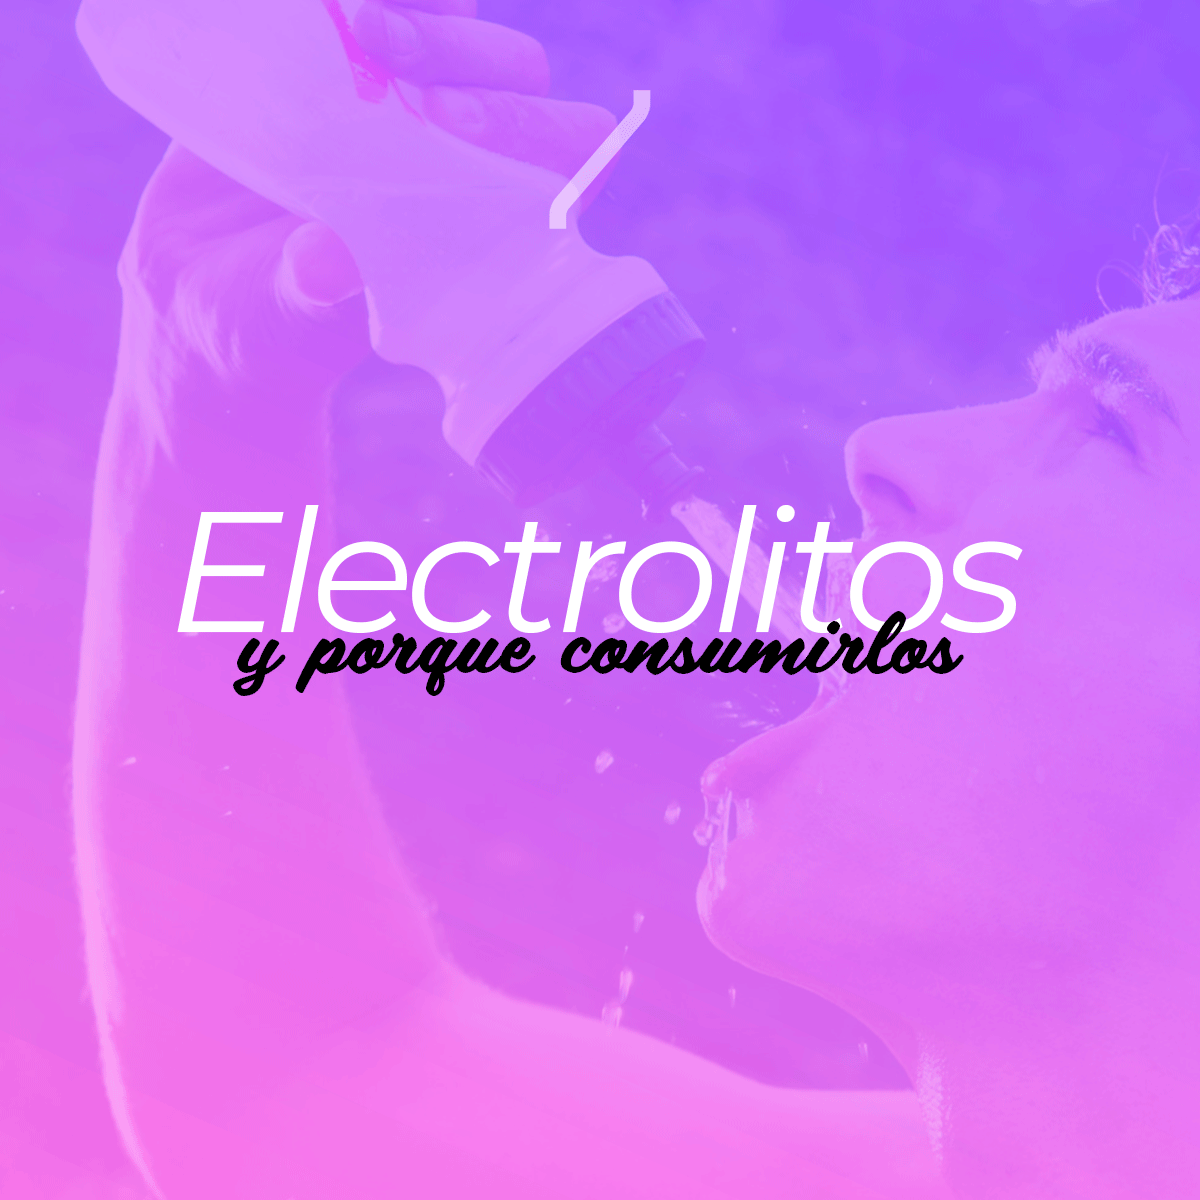 Electrolitos y porque consumirlos